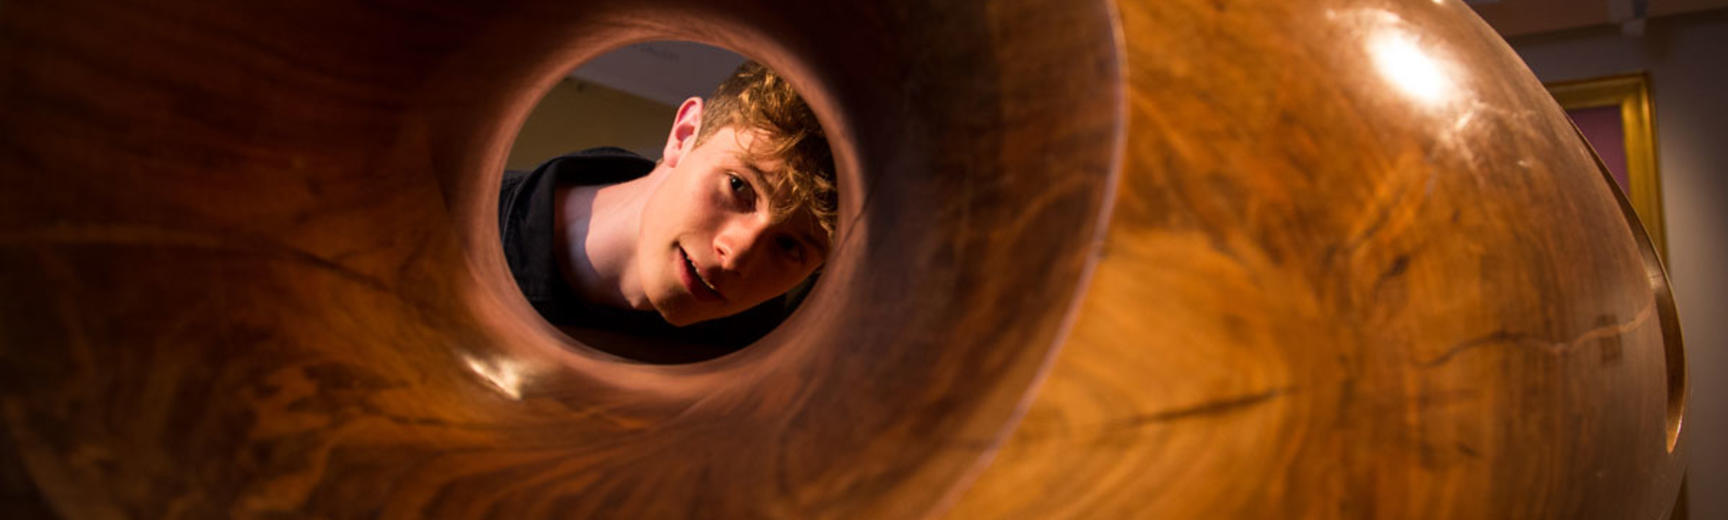 A young man looking through a hollow modern art work